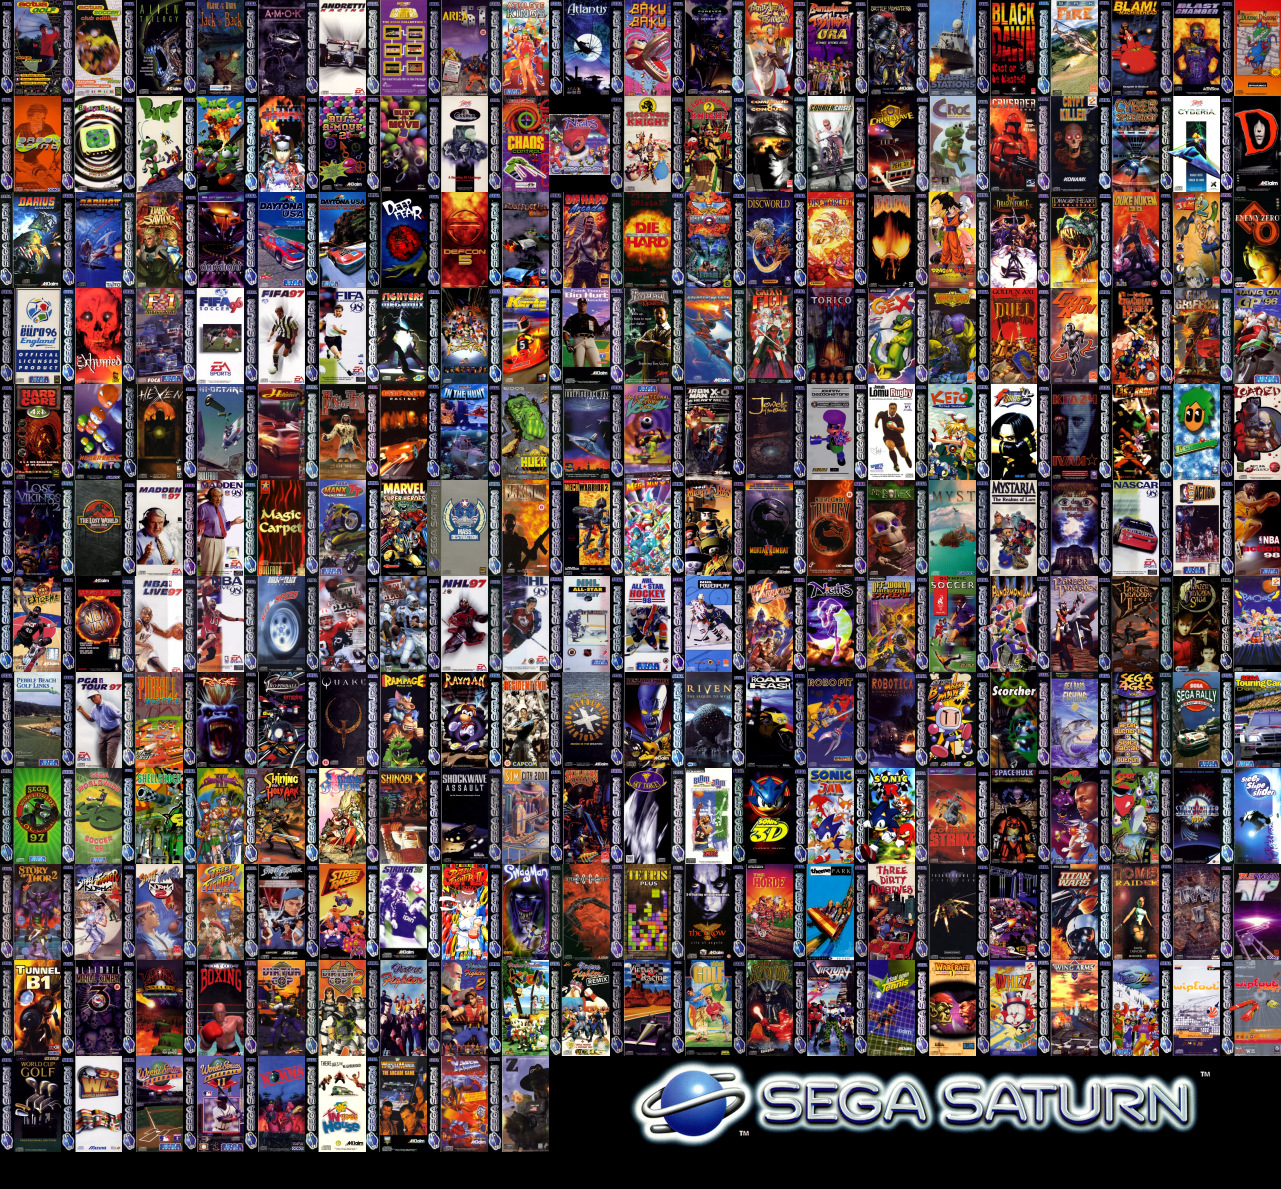 Sega Saturn Wallpaper - WallpaperSafari